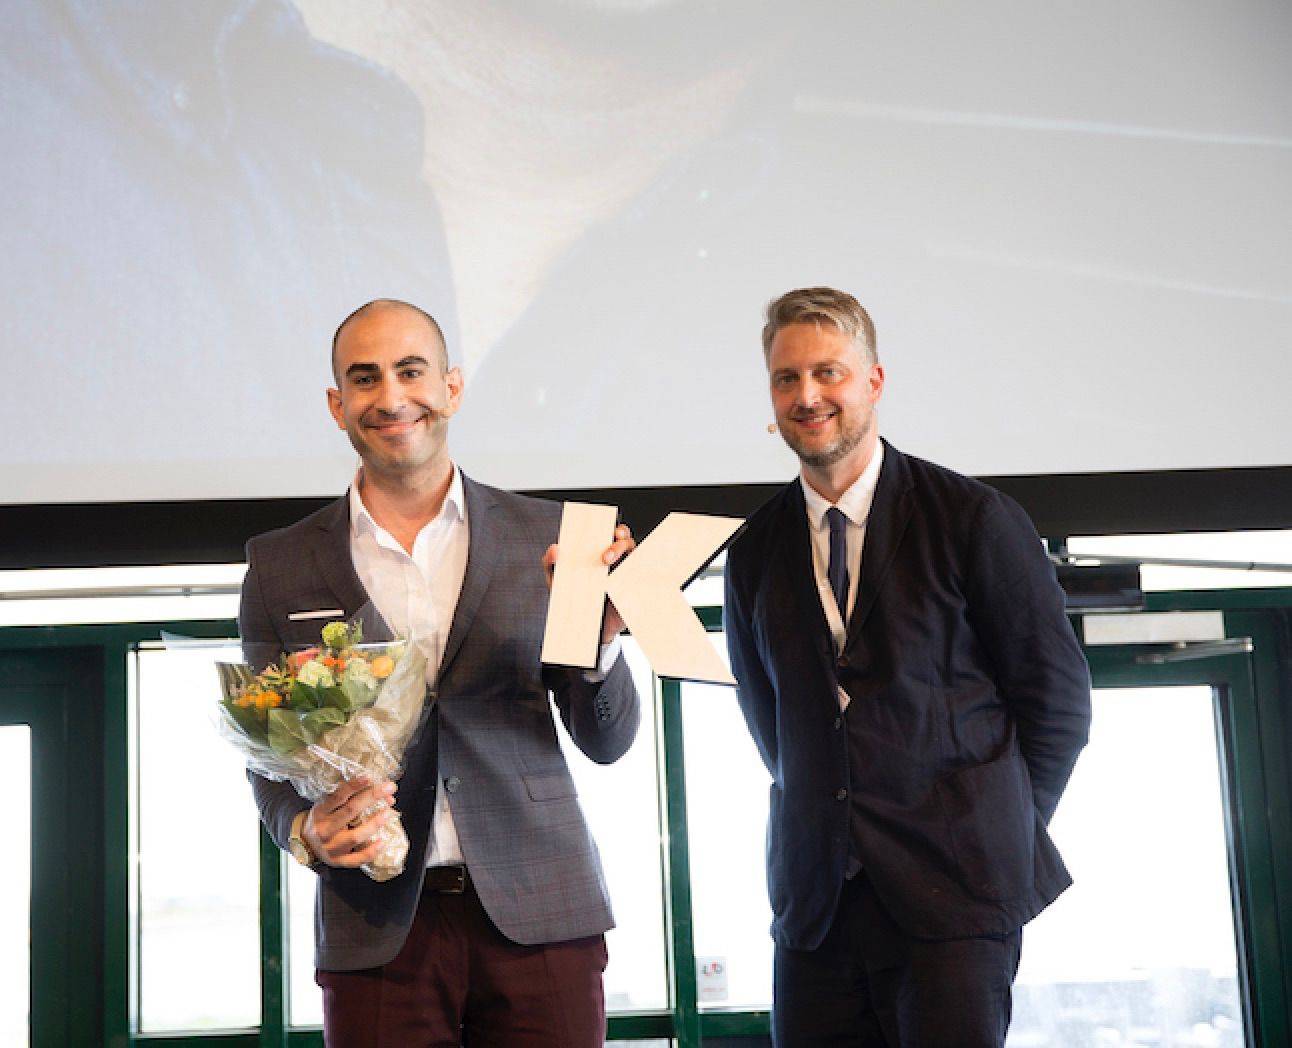 KOM18's store finale: Abdel Aziz Mahmud får DJ's og Kforums KOM-pris 2018. Kforums chefredaktør Timme Bisgaard Munk flankerer. Foto: Jeanne Kornum.